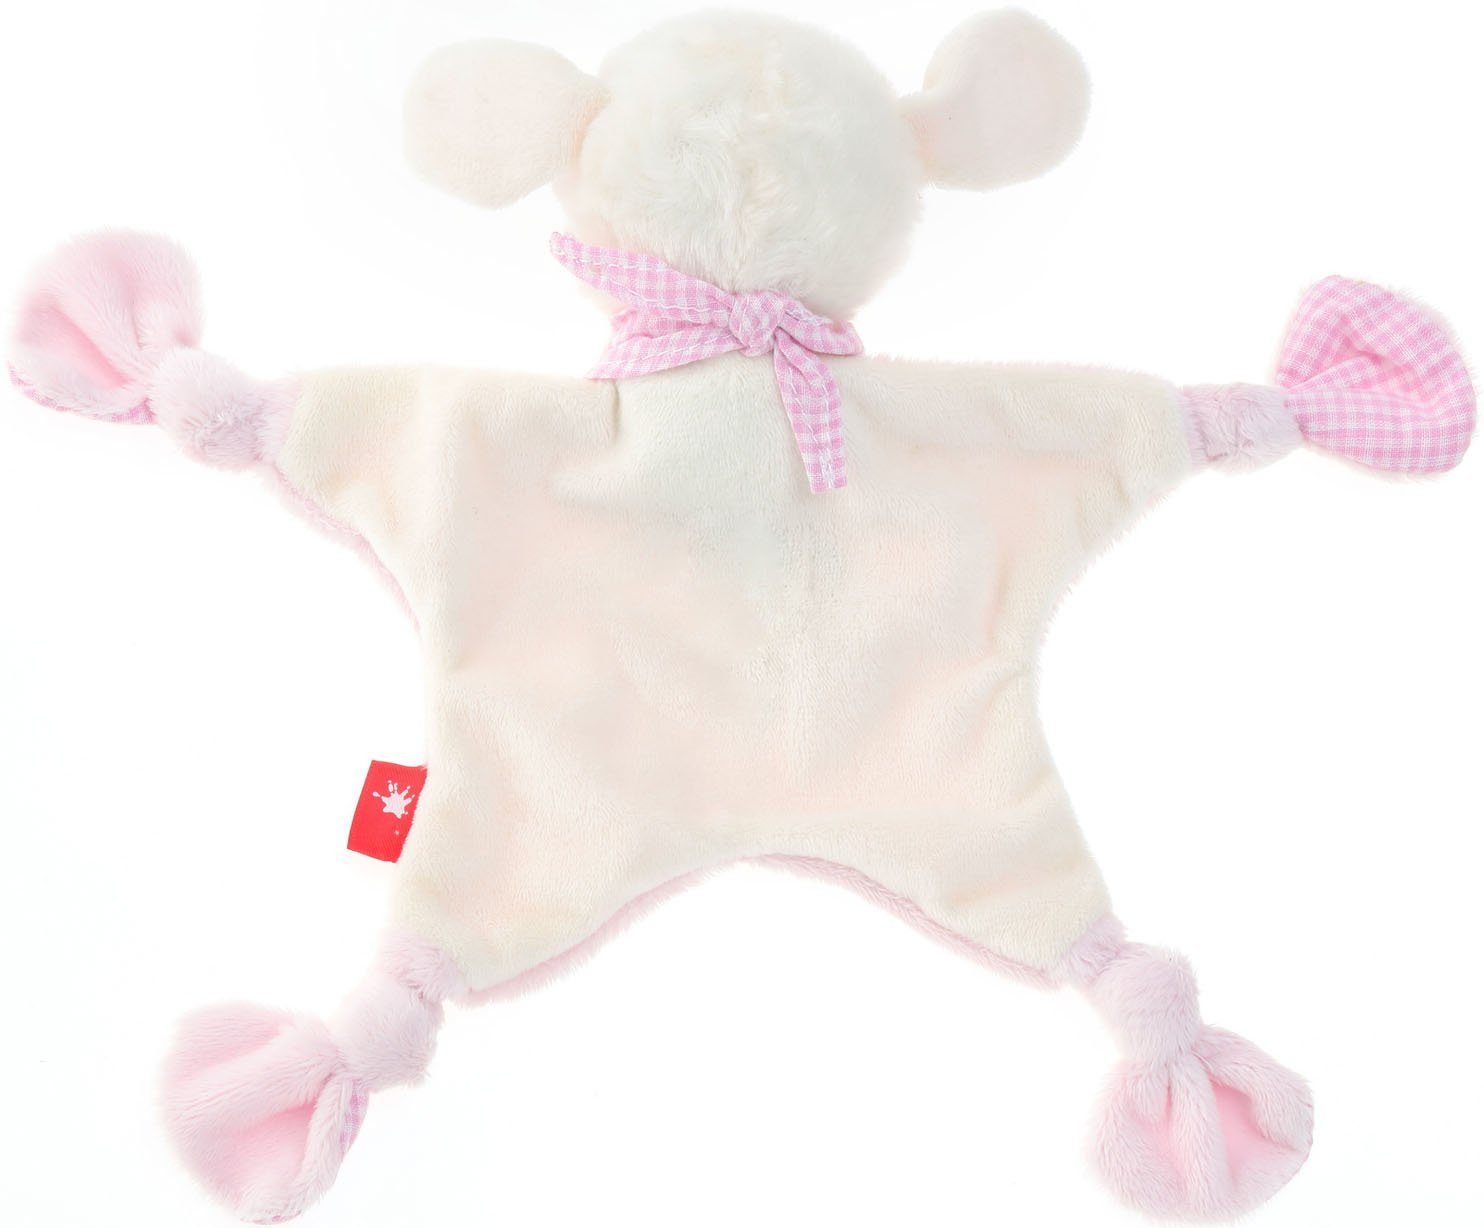 Kinder Babyernährung Sigikid Schnuffeltuch Sternzeichen Jungfrau, Schaf rosa